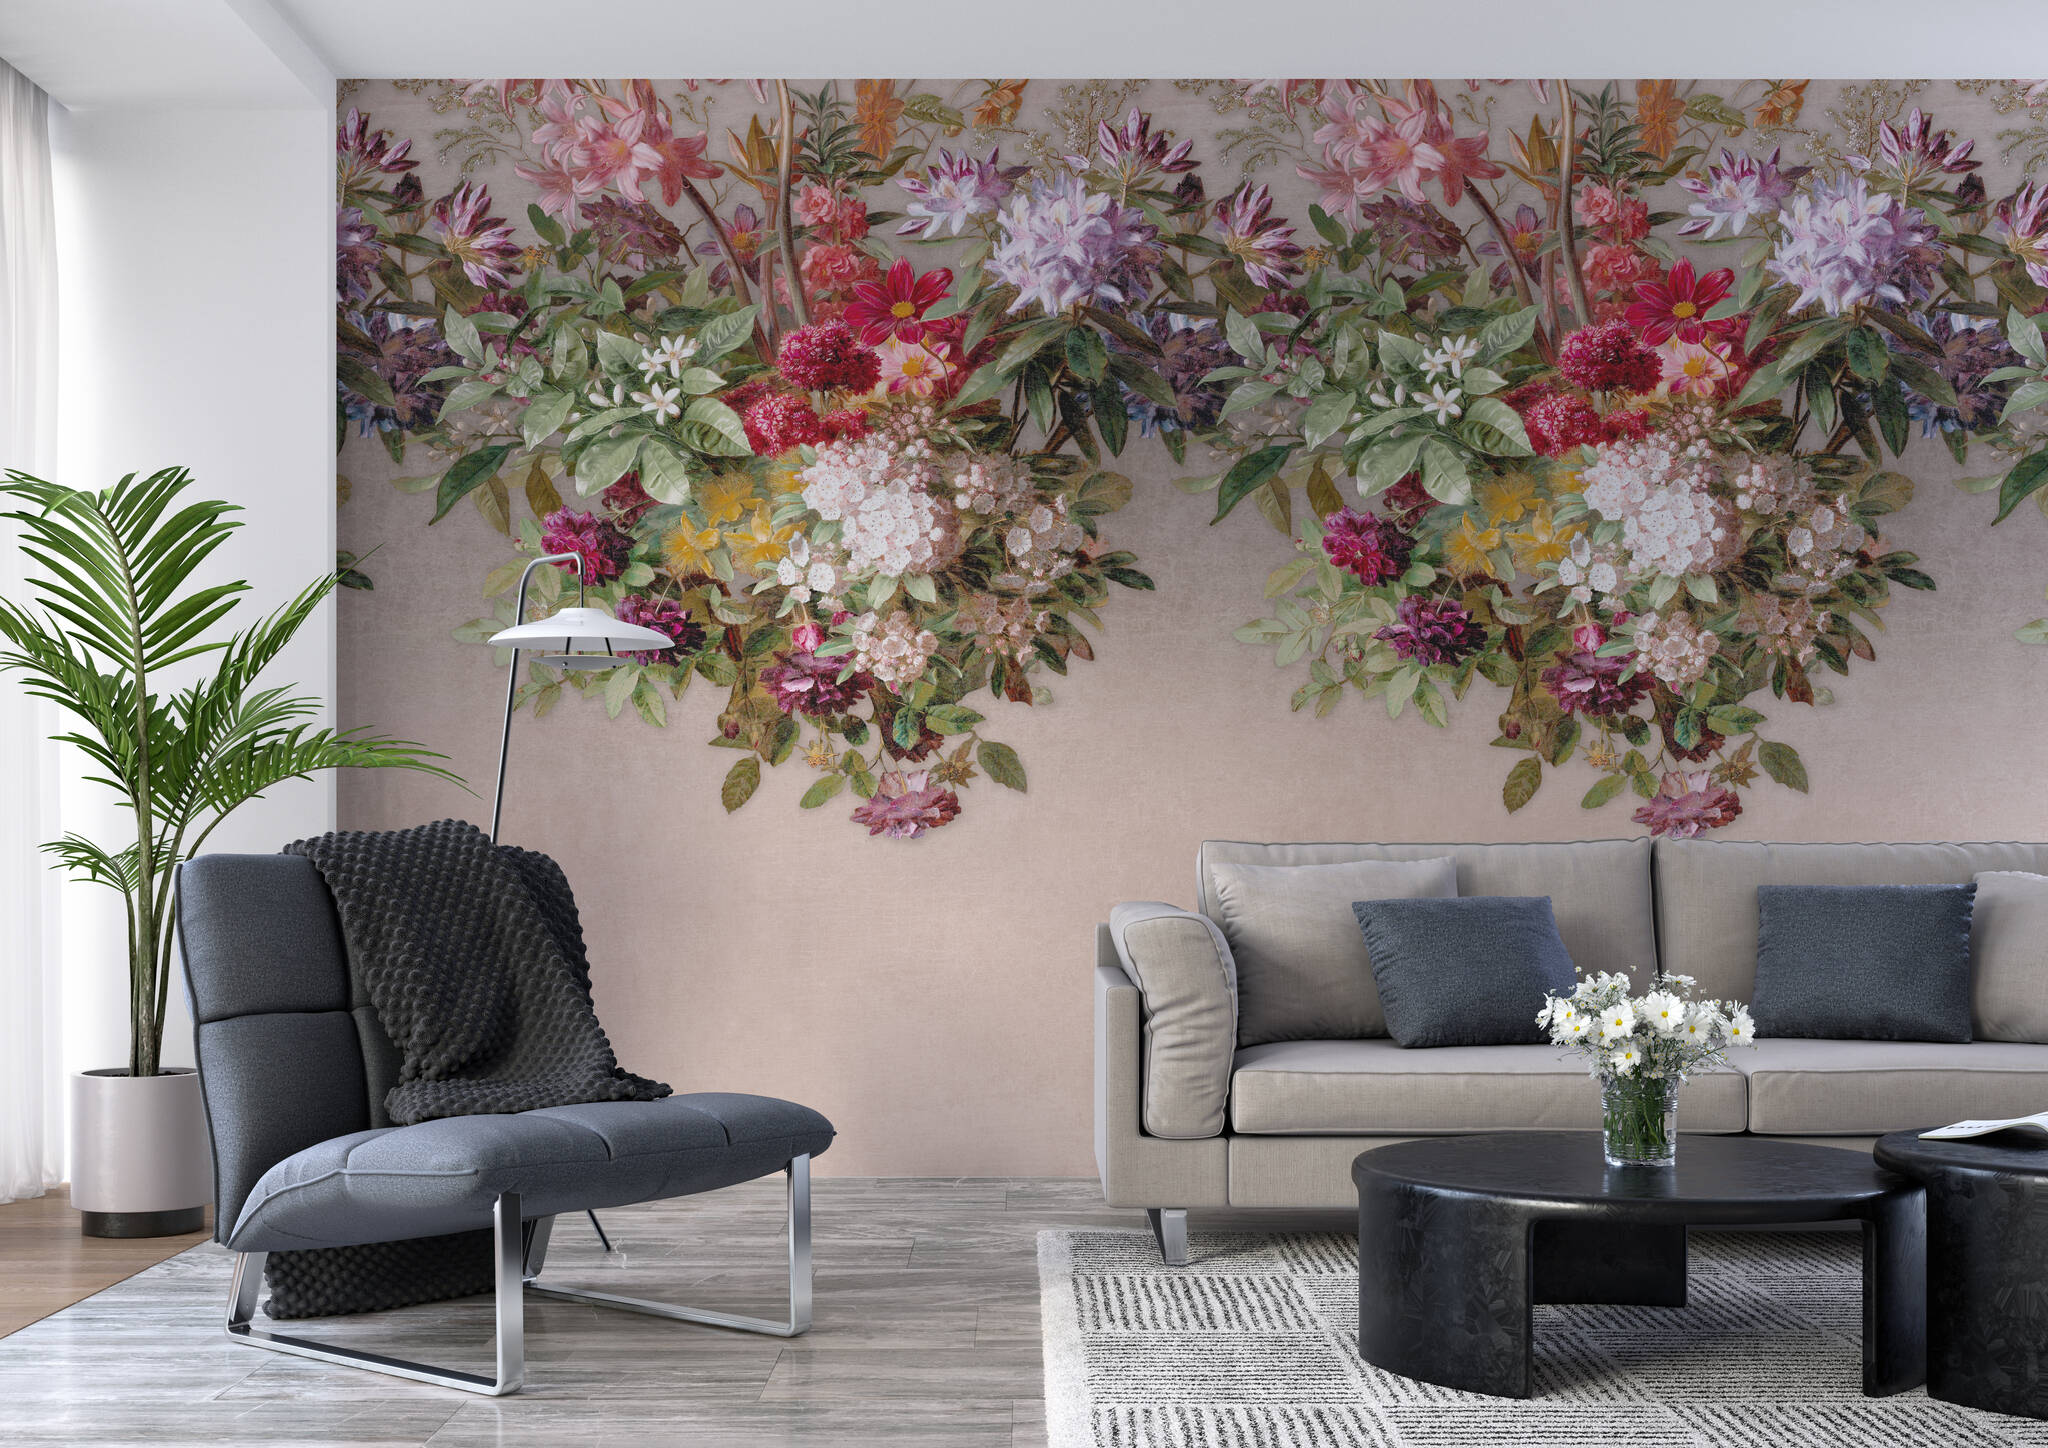 Wohnzimmer mit Wandbild - Blütenpracht in kräftigen Farben auf beigem Hintergrund auf der oberen Hälfte der Wand